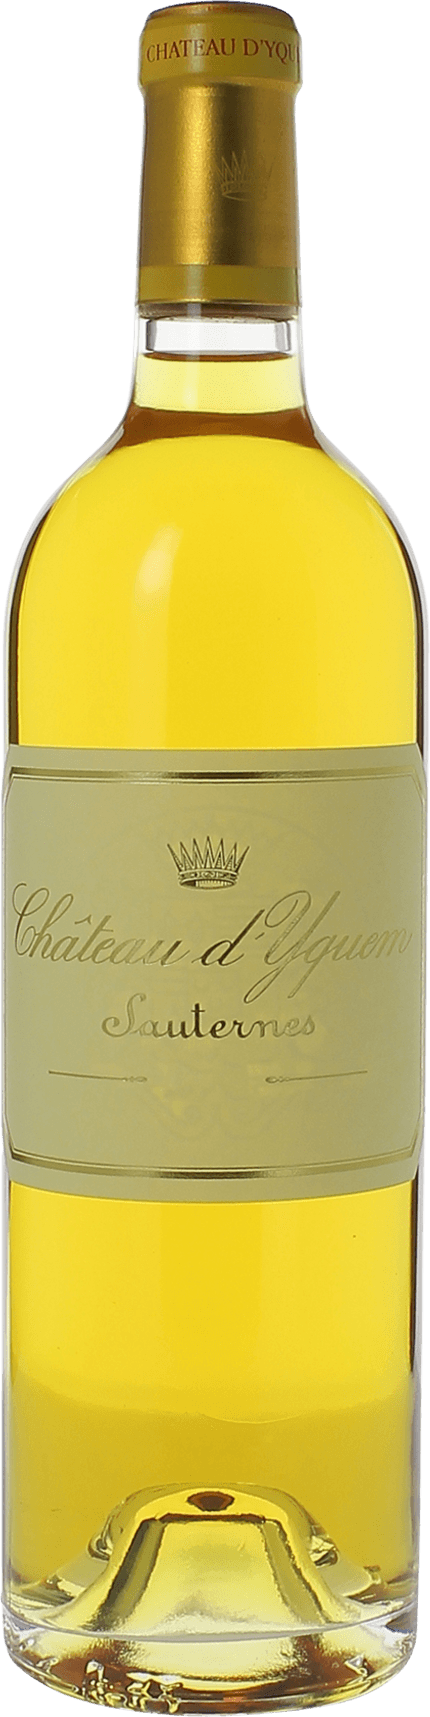 Yquem 2015 1er Grand cru class Sauternes, Bordeaux blanc